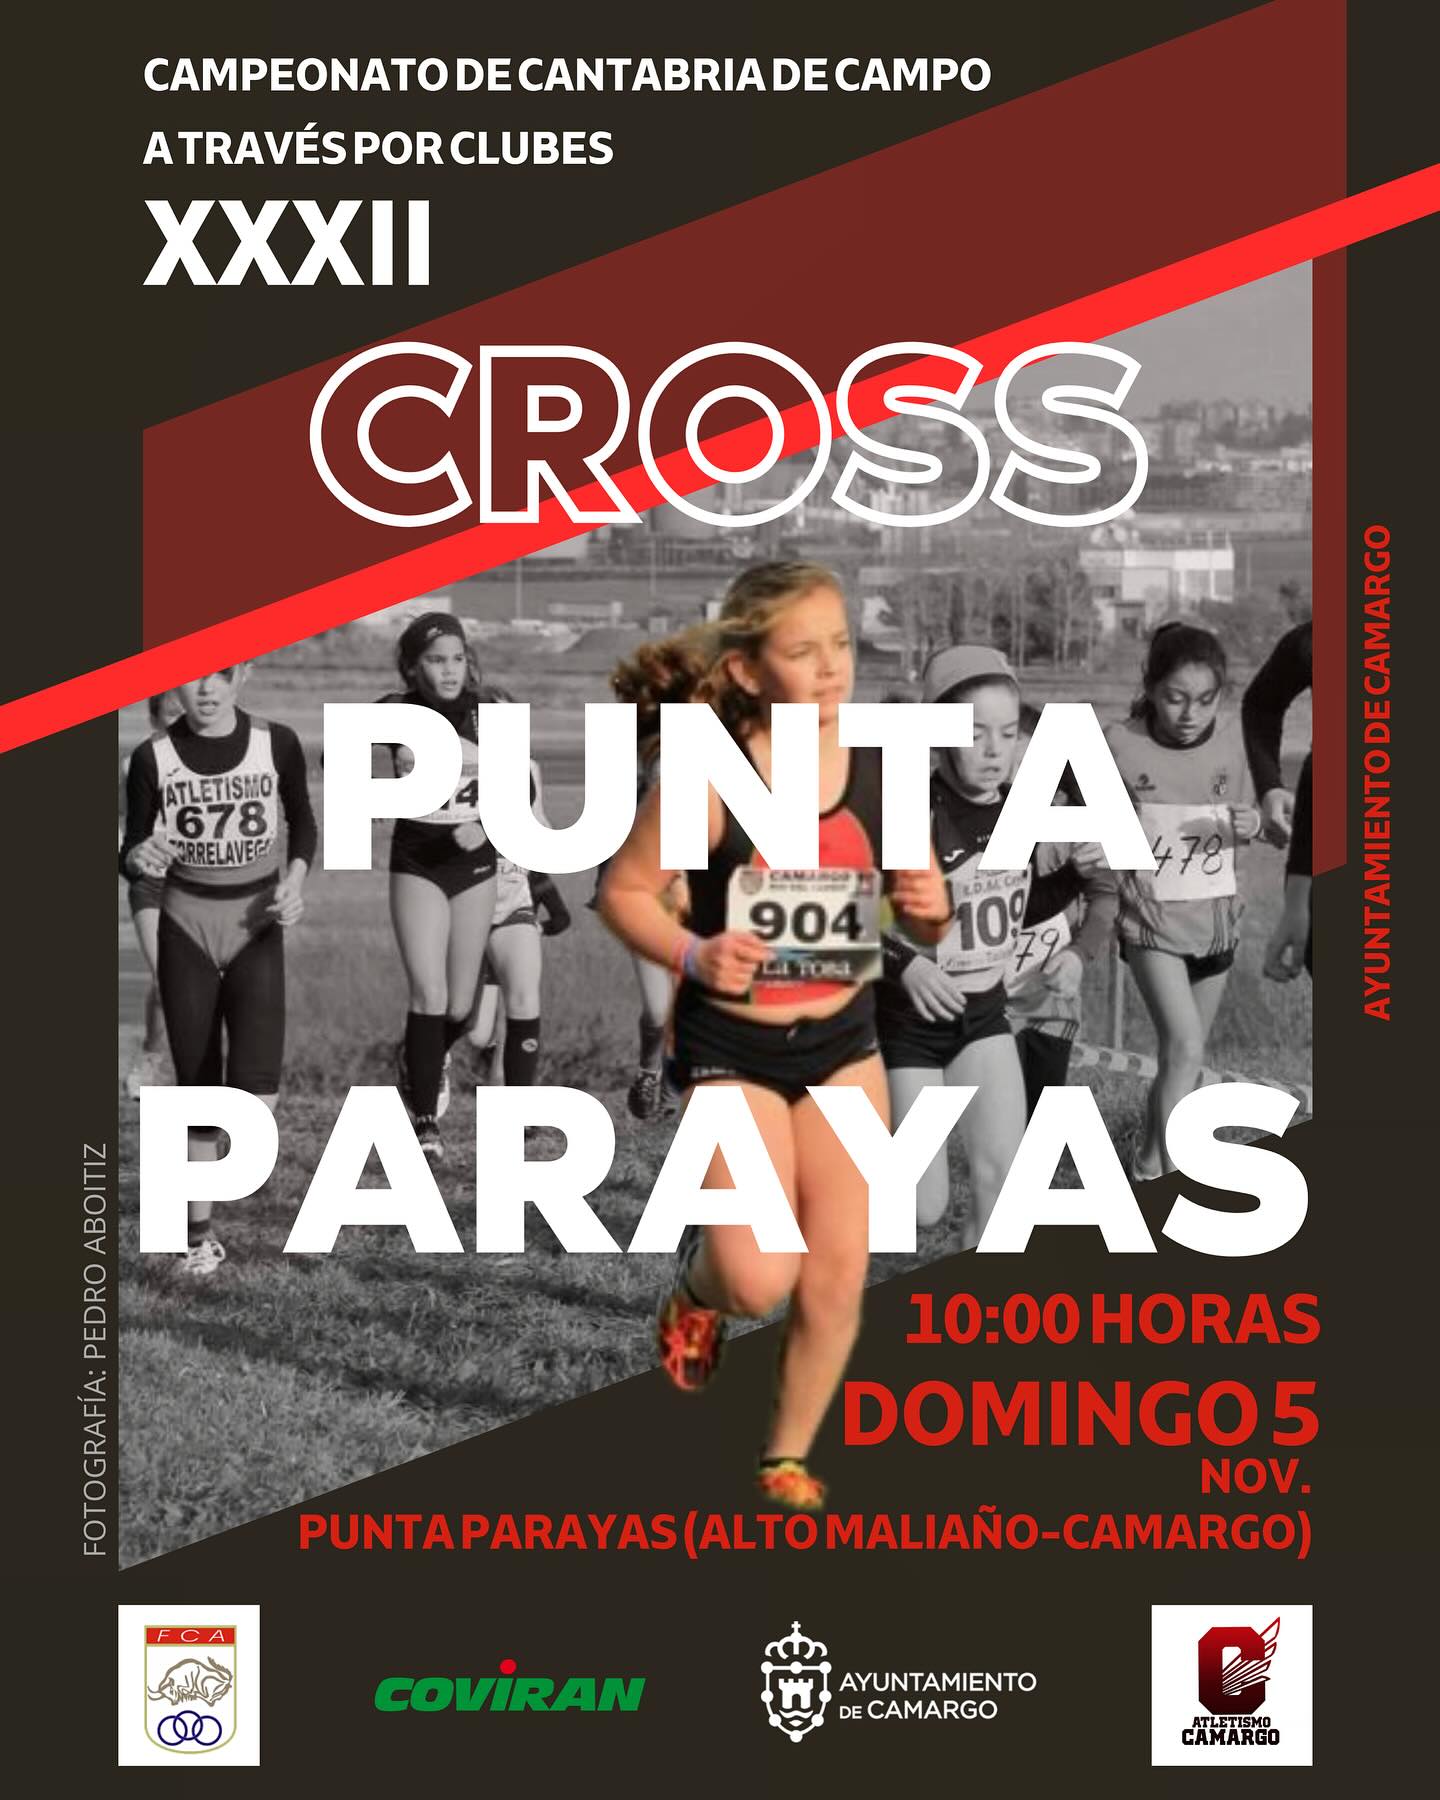 XXXII Cross Punta Parayas - Ayuntamiento de Camargo / Campeonato de Cantabria de Campo a Través por Clubes @ Alto Maliaño, Camargo (Cantabria)